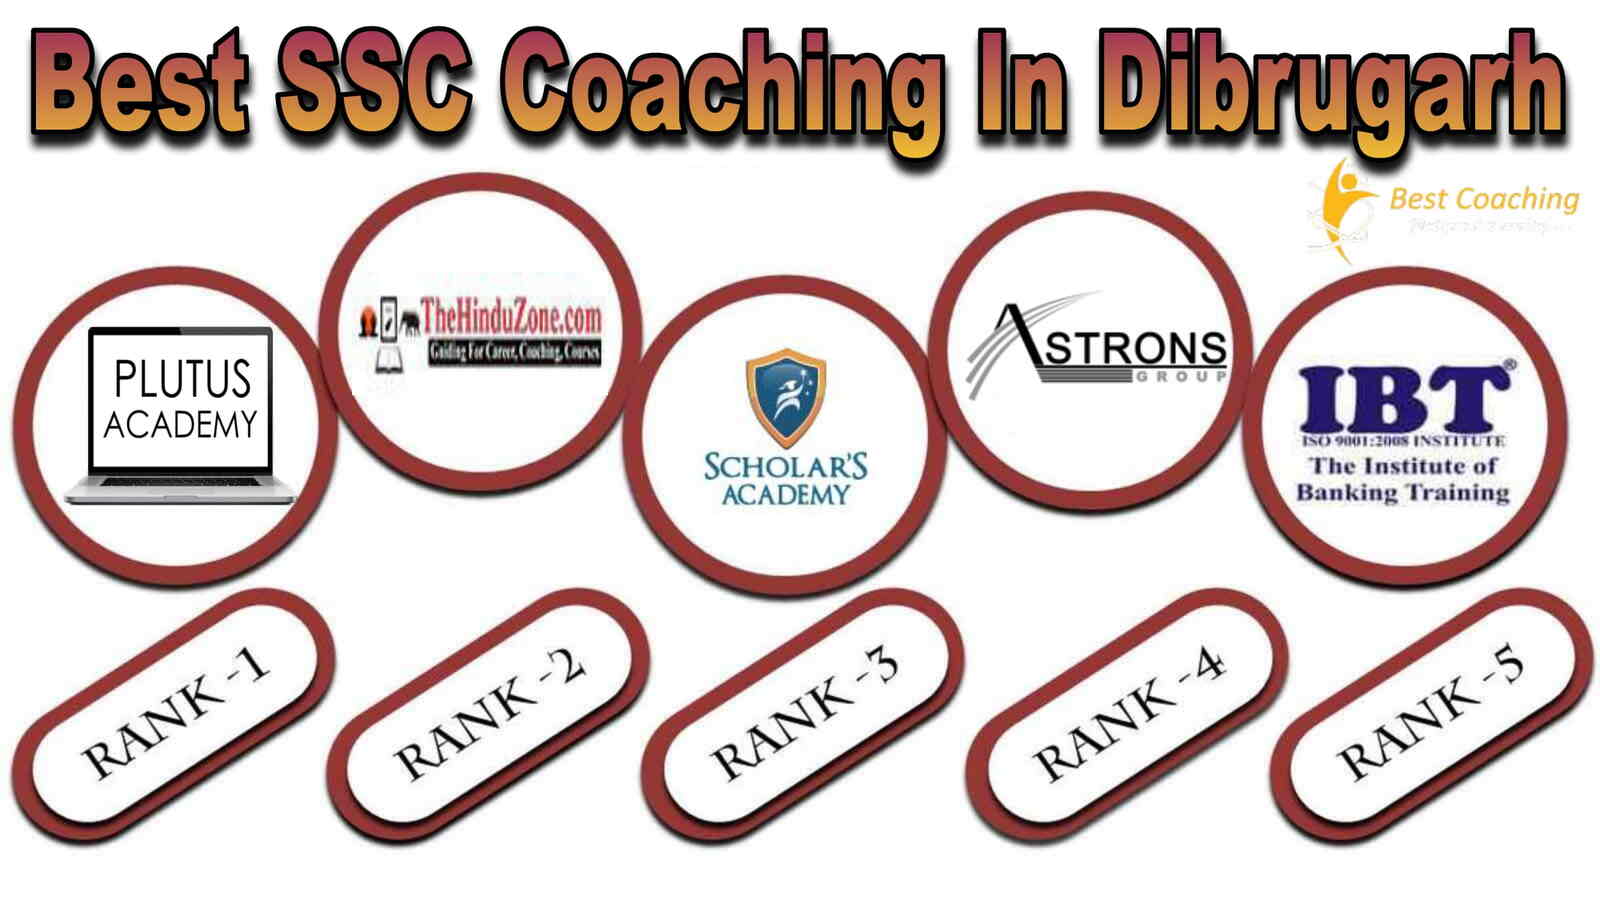 Best SSC Coaching in Dibrugarh